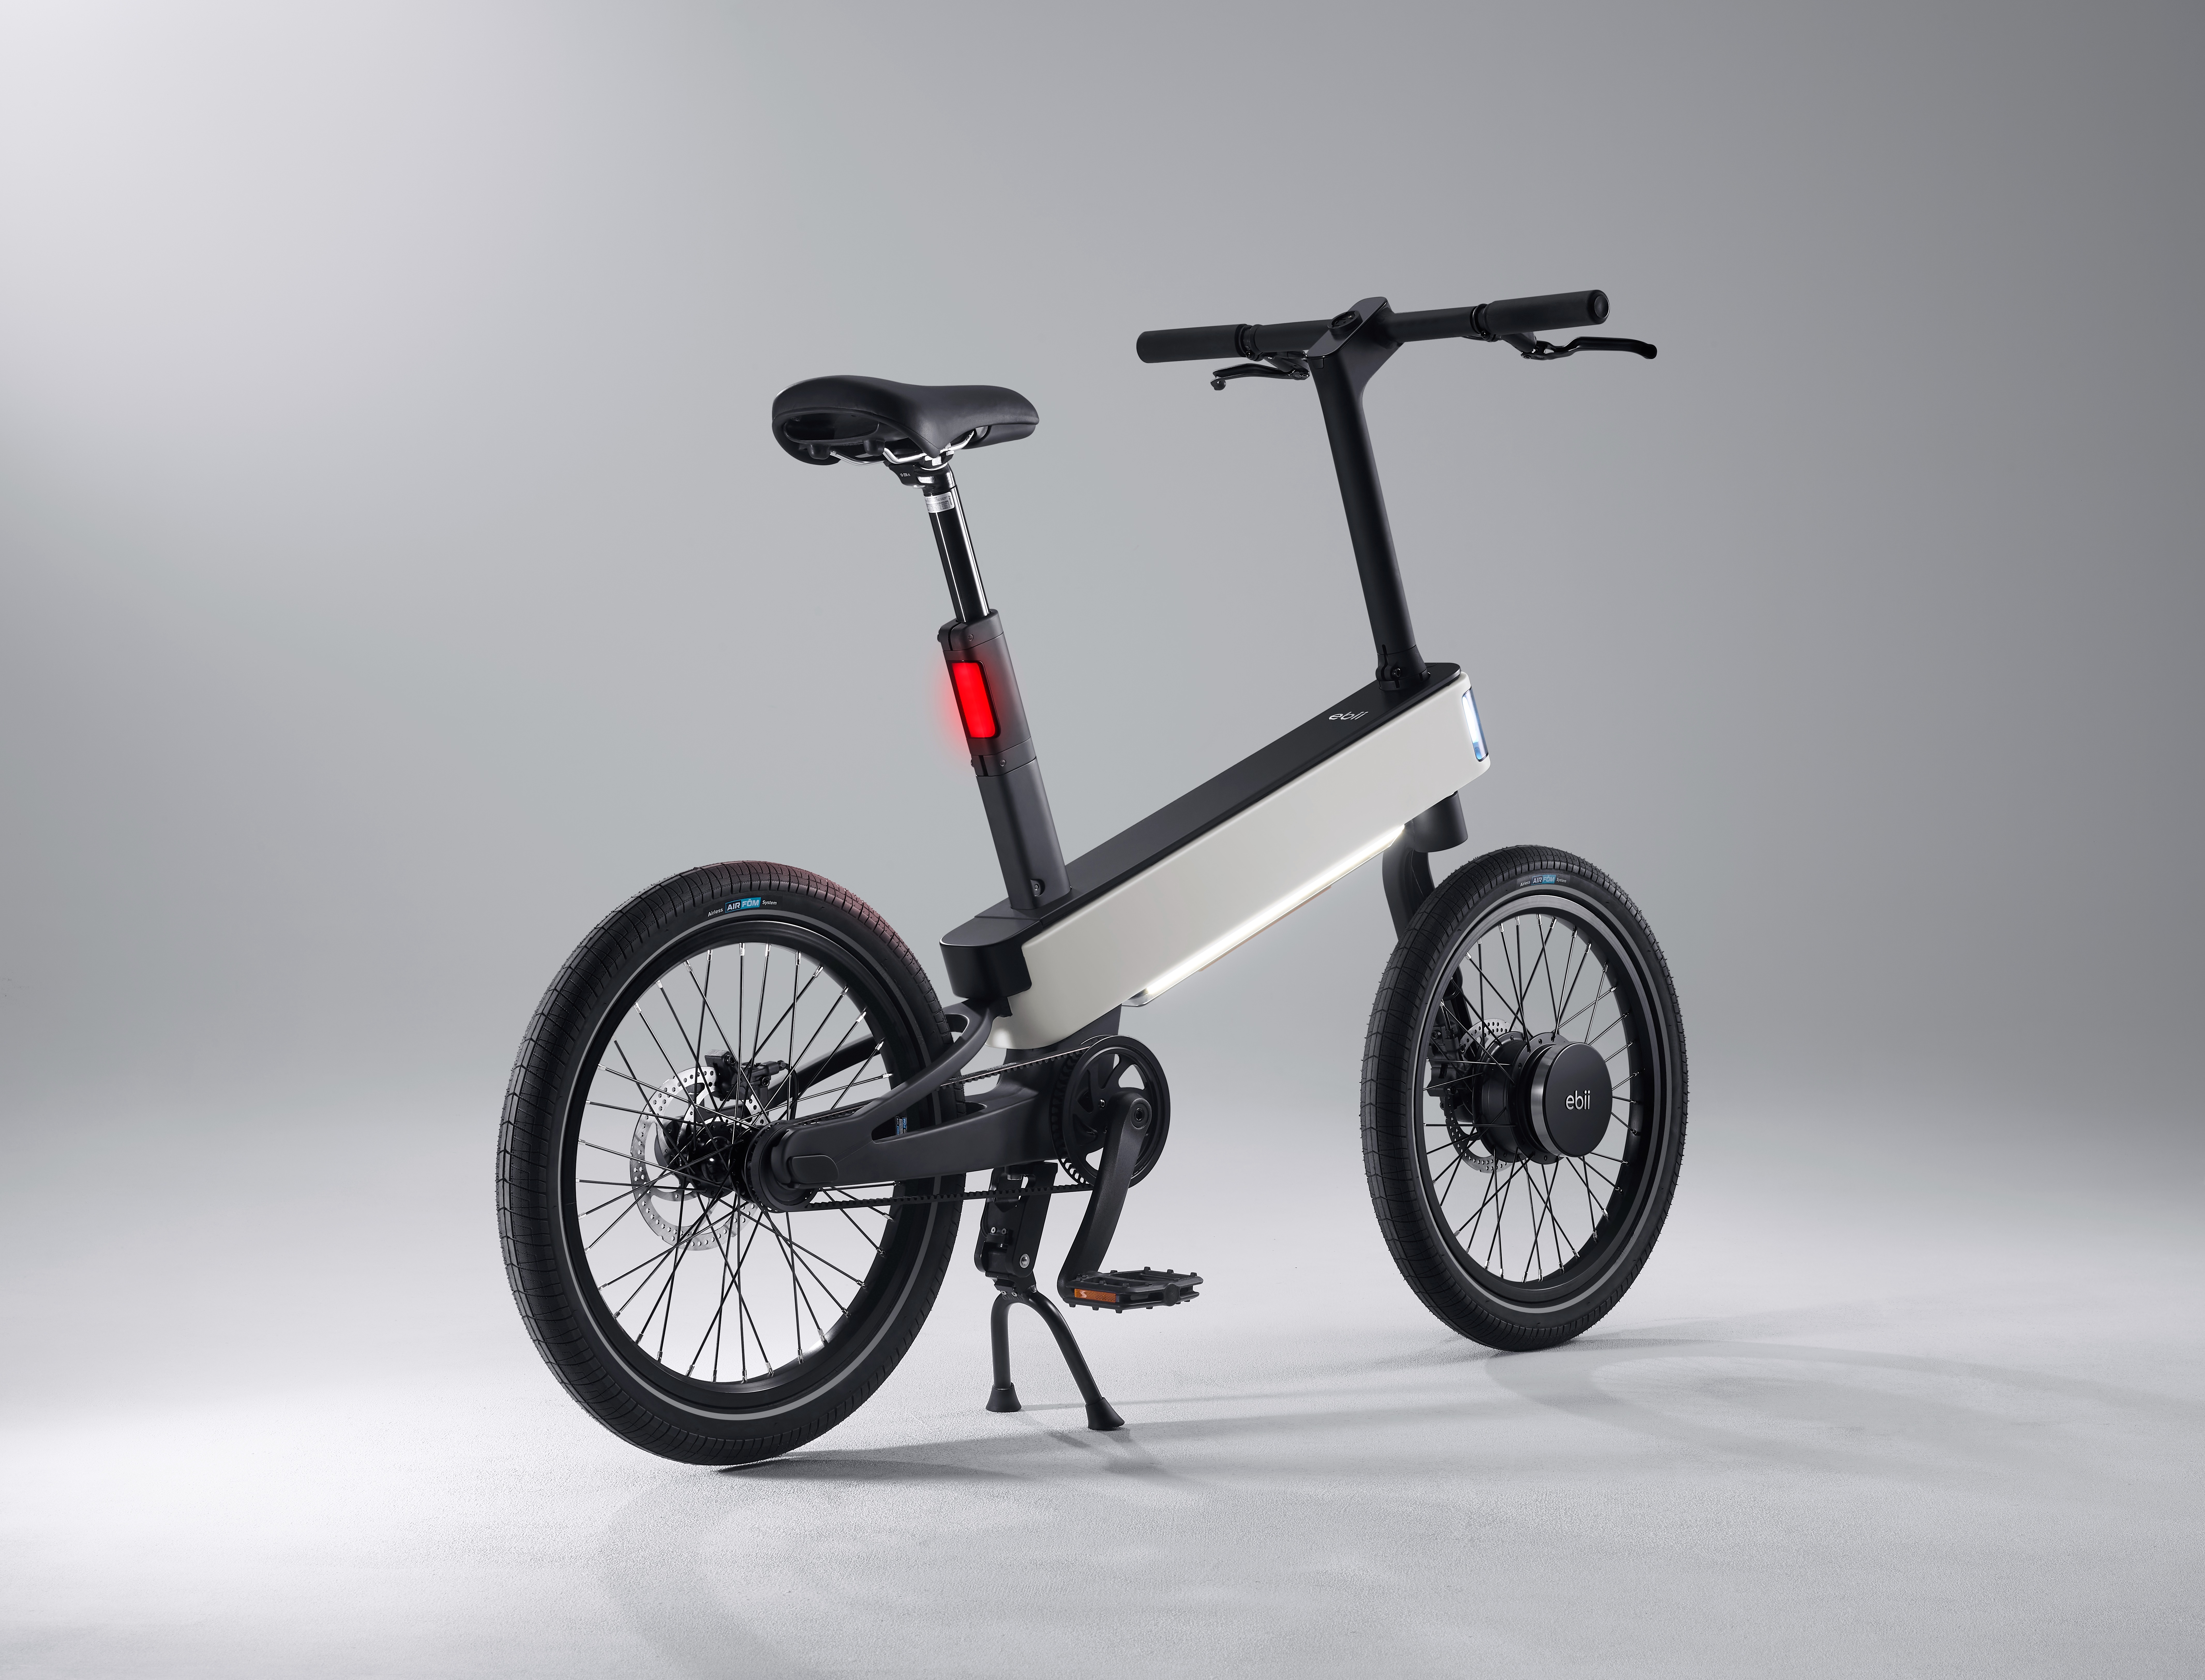 Acer creó una bicicleta con llantas sin aire, bluetooth y funciones de inteligencia artificial. (Acer)